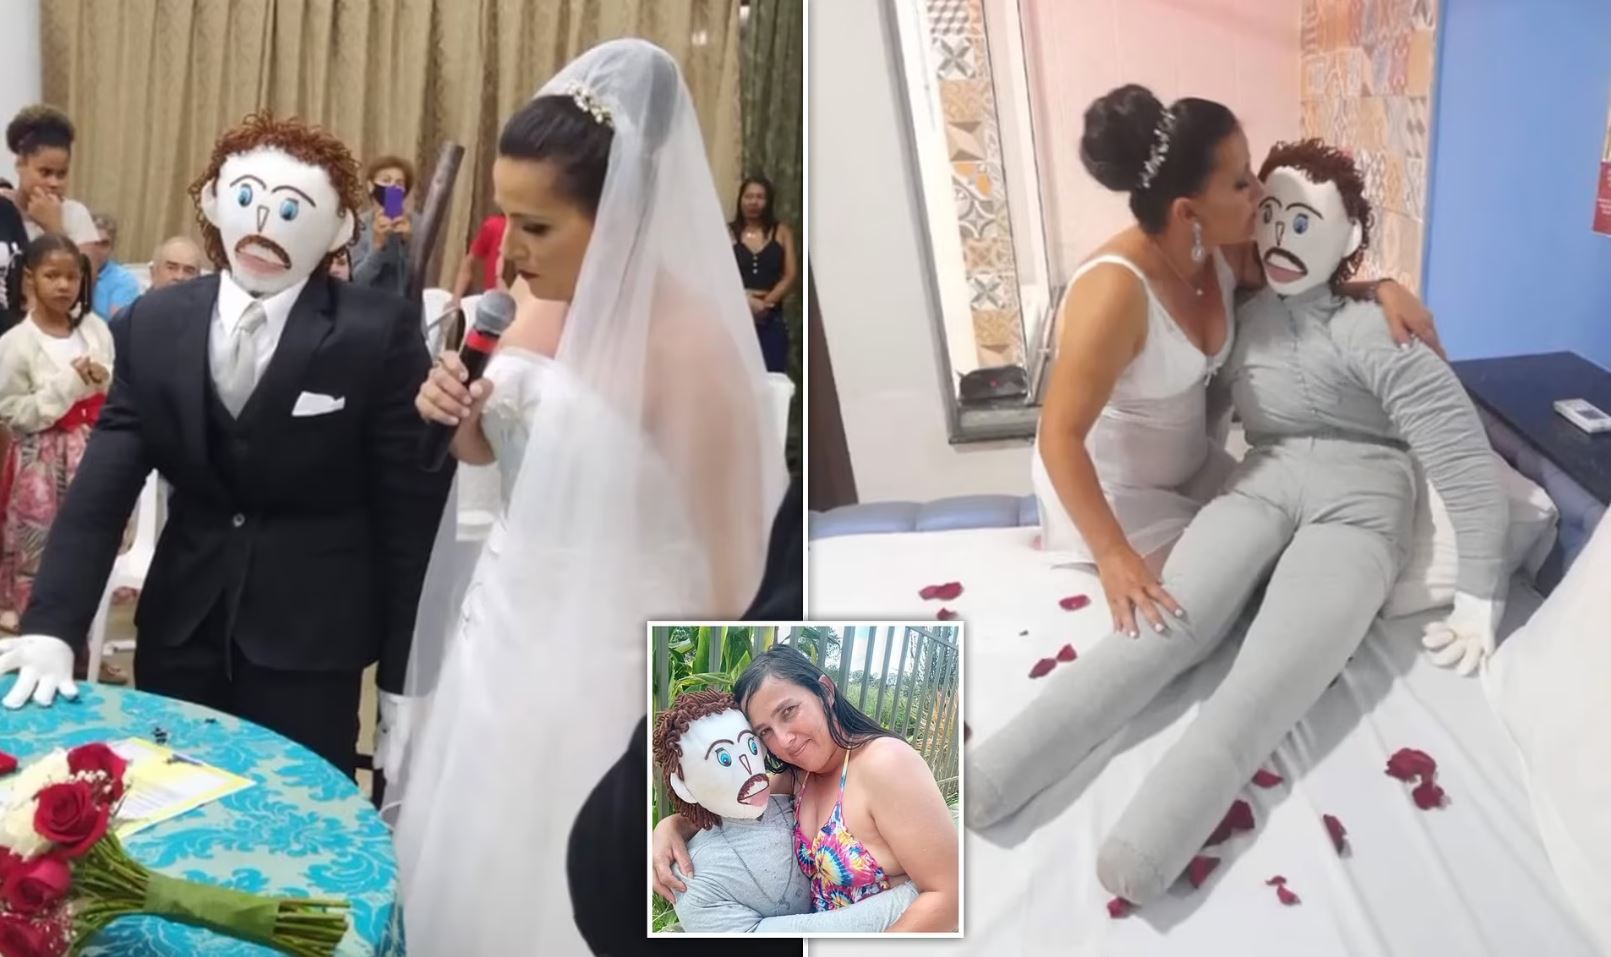 Gruaja martohet me kukullën, pasi “ngeli shtatzëne” pretendon se ai e ka tradhtuar: Gjeta mesazhet